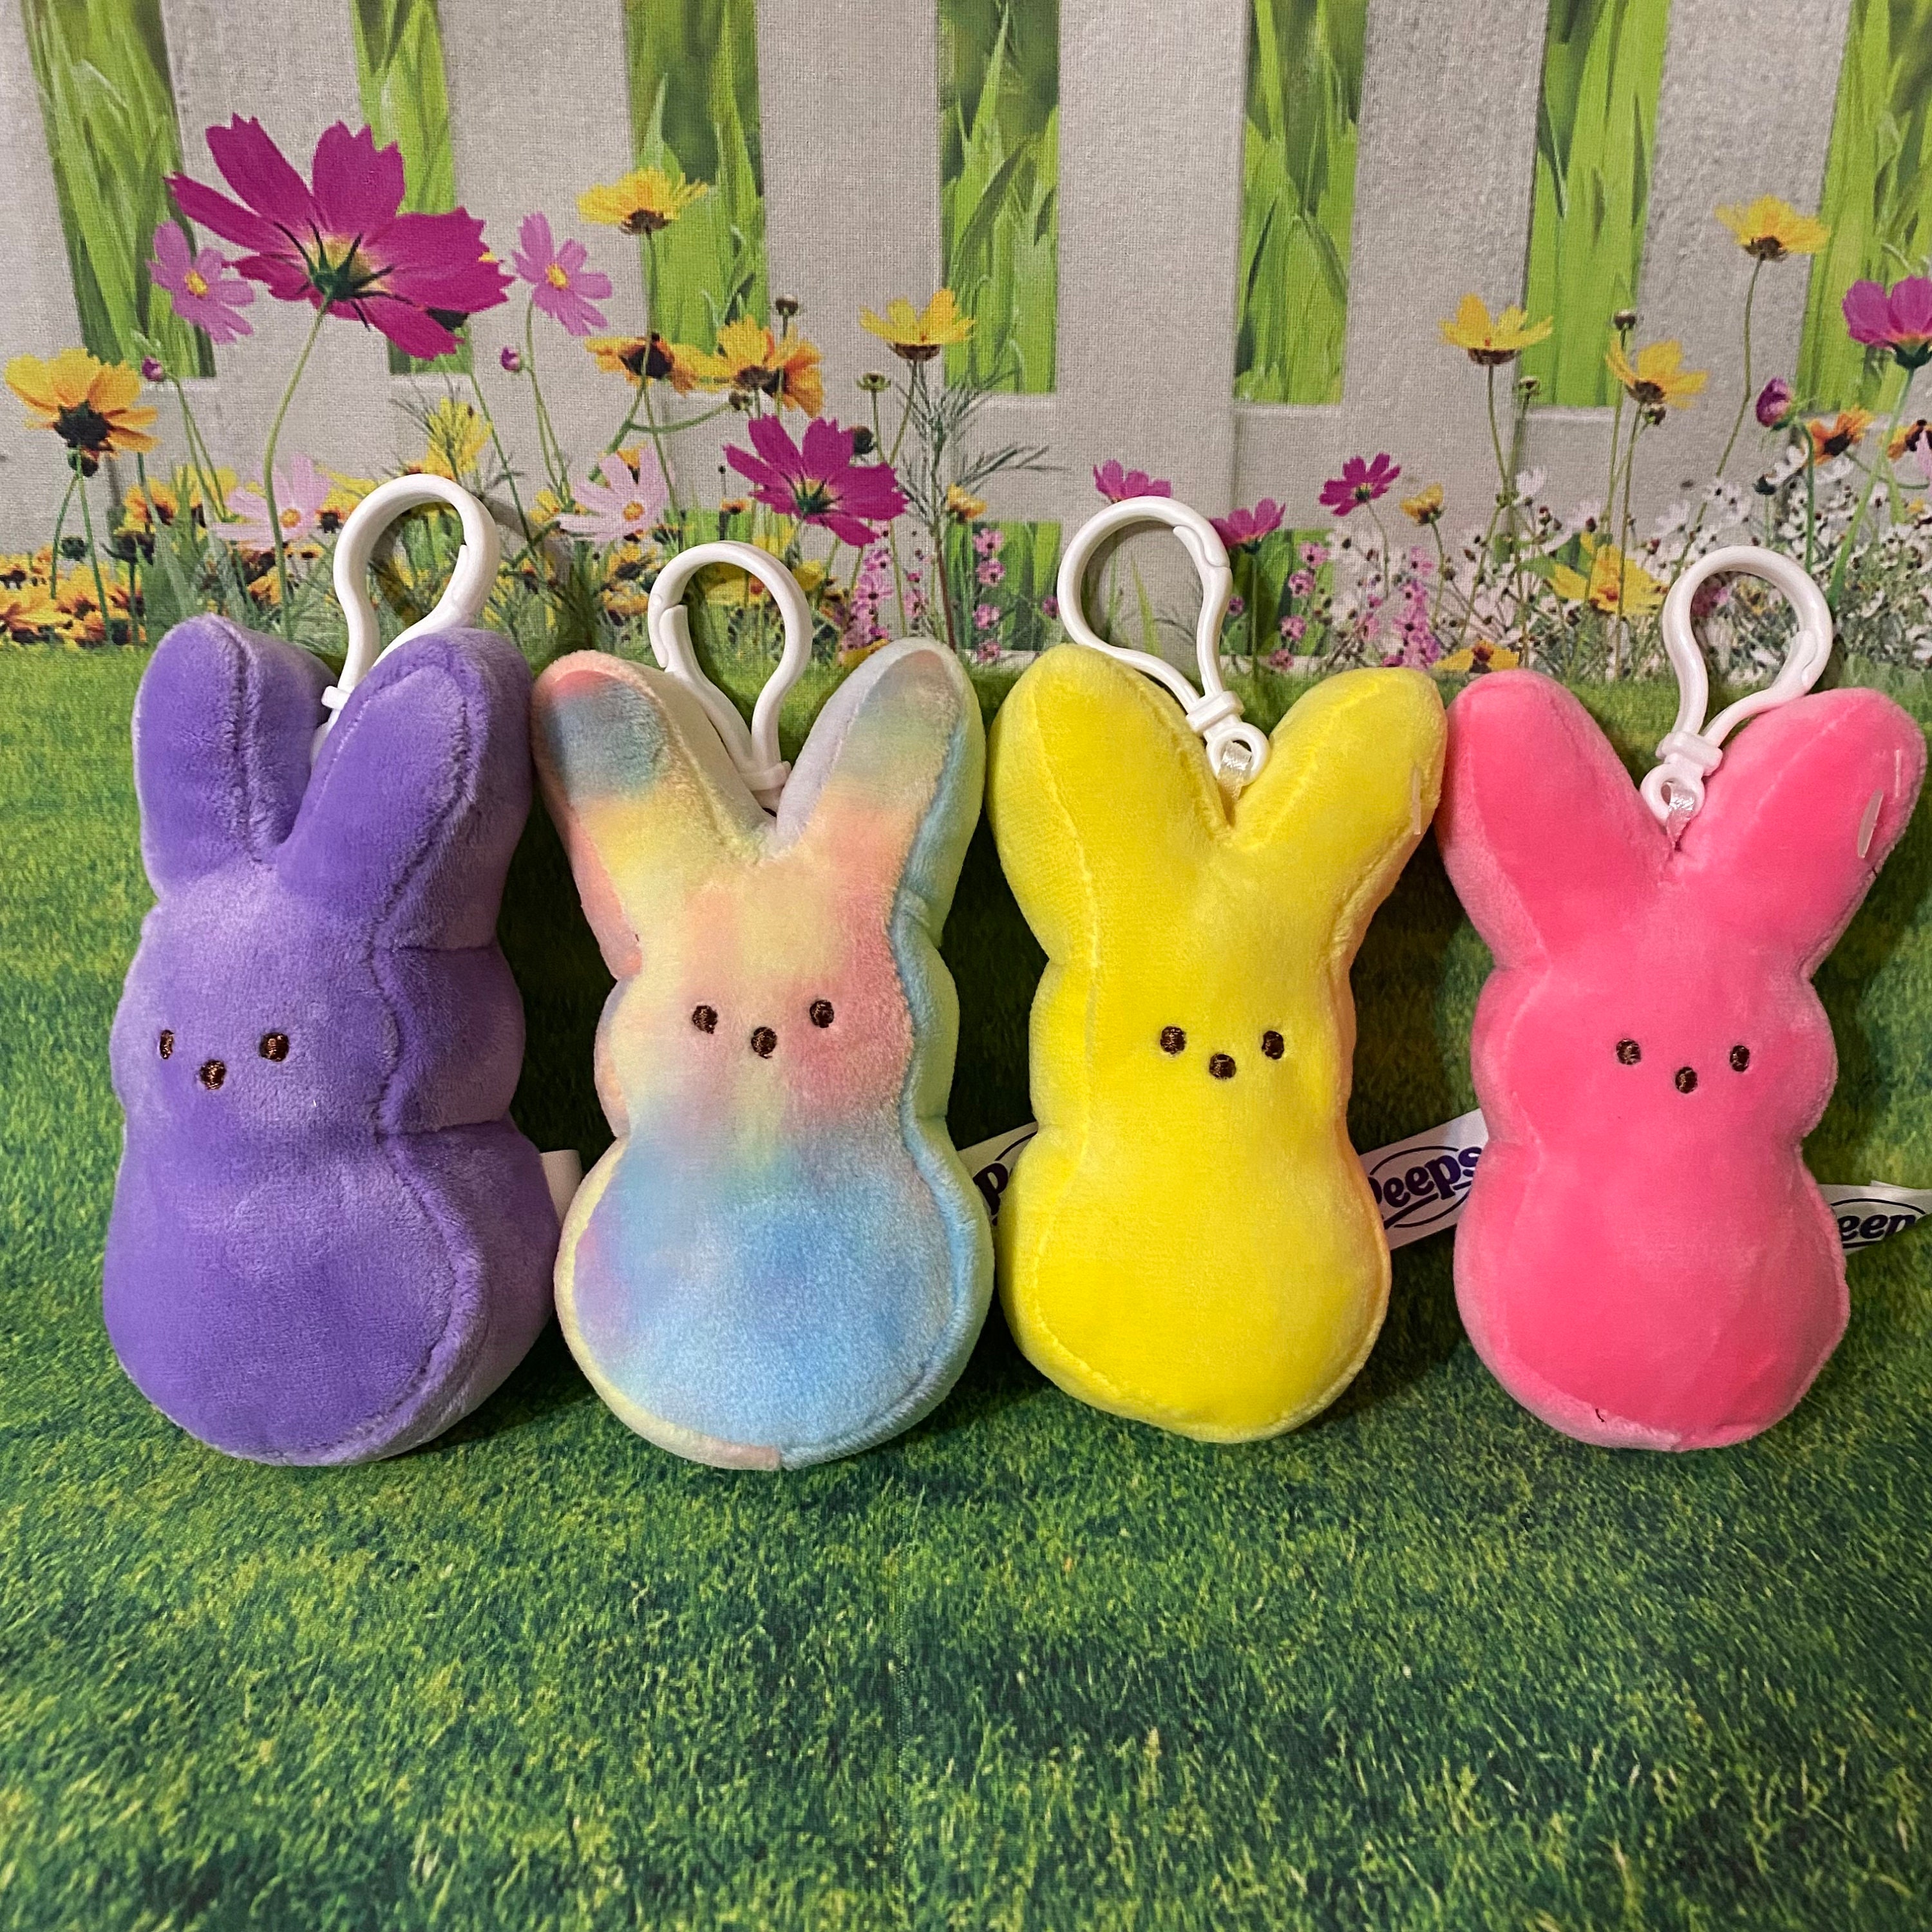 Cute Children Plush Rabbit Keyring Plush Keyring Plush Pendant Hanging  Ornament Ornaments Bag Pendant Radish Rabbit Plush Keychain Rabbit Stuffed  Toy